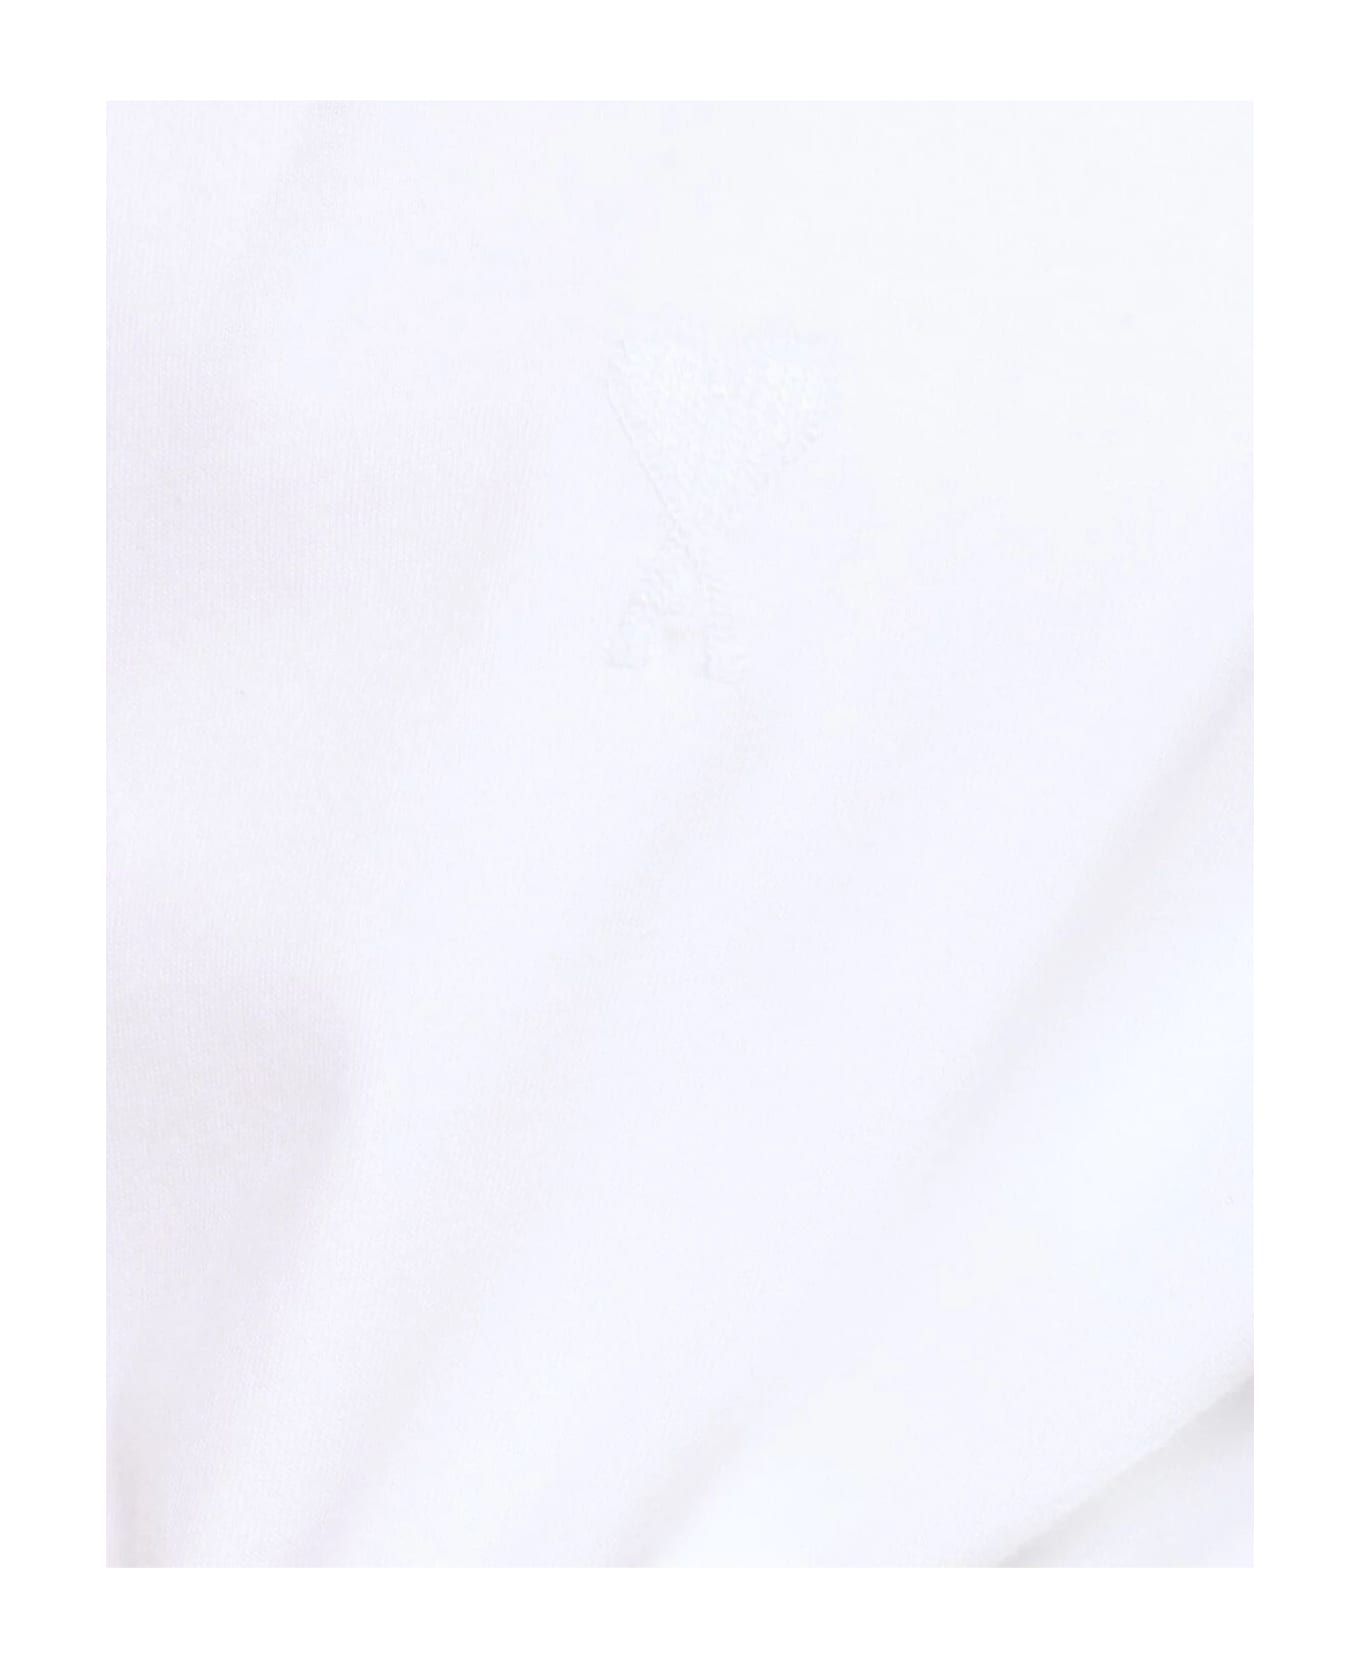 Ami Alexandre Mattiussi Ami T-shirts And Polos White - White シャツ